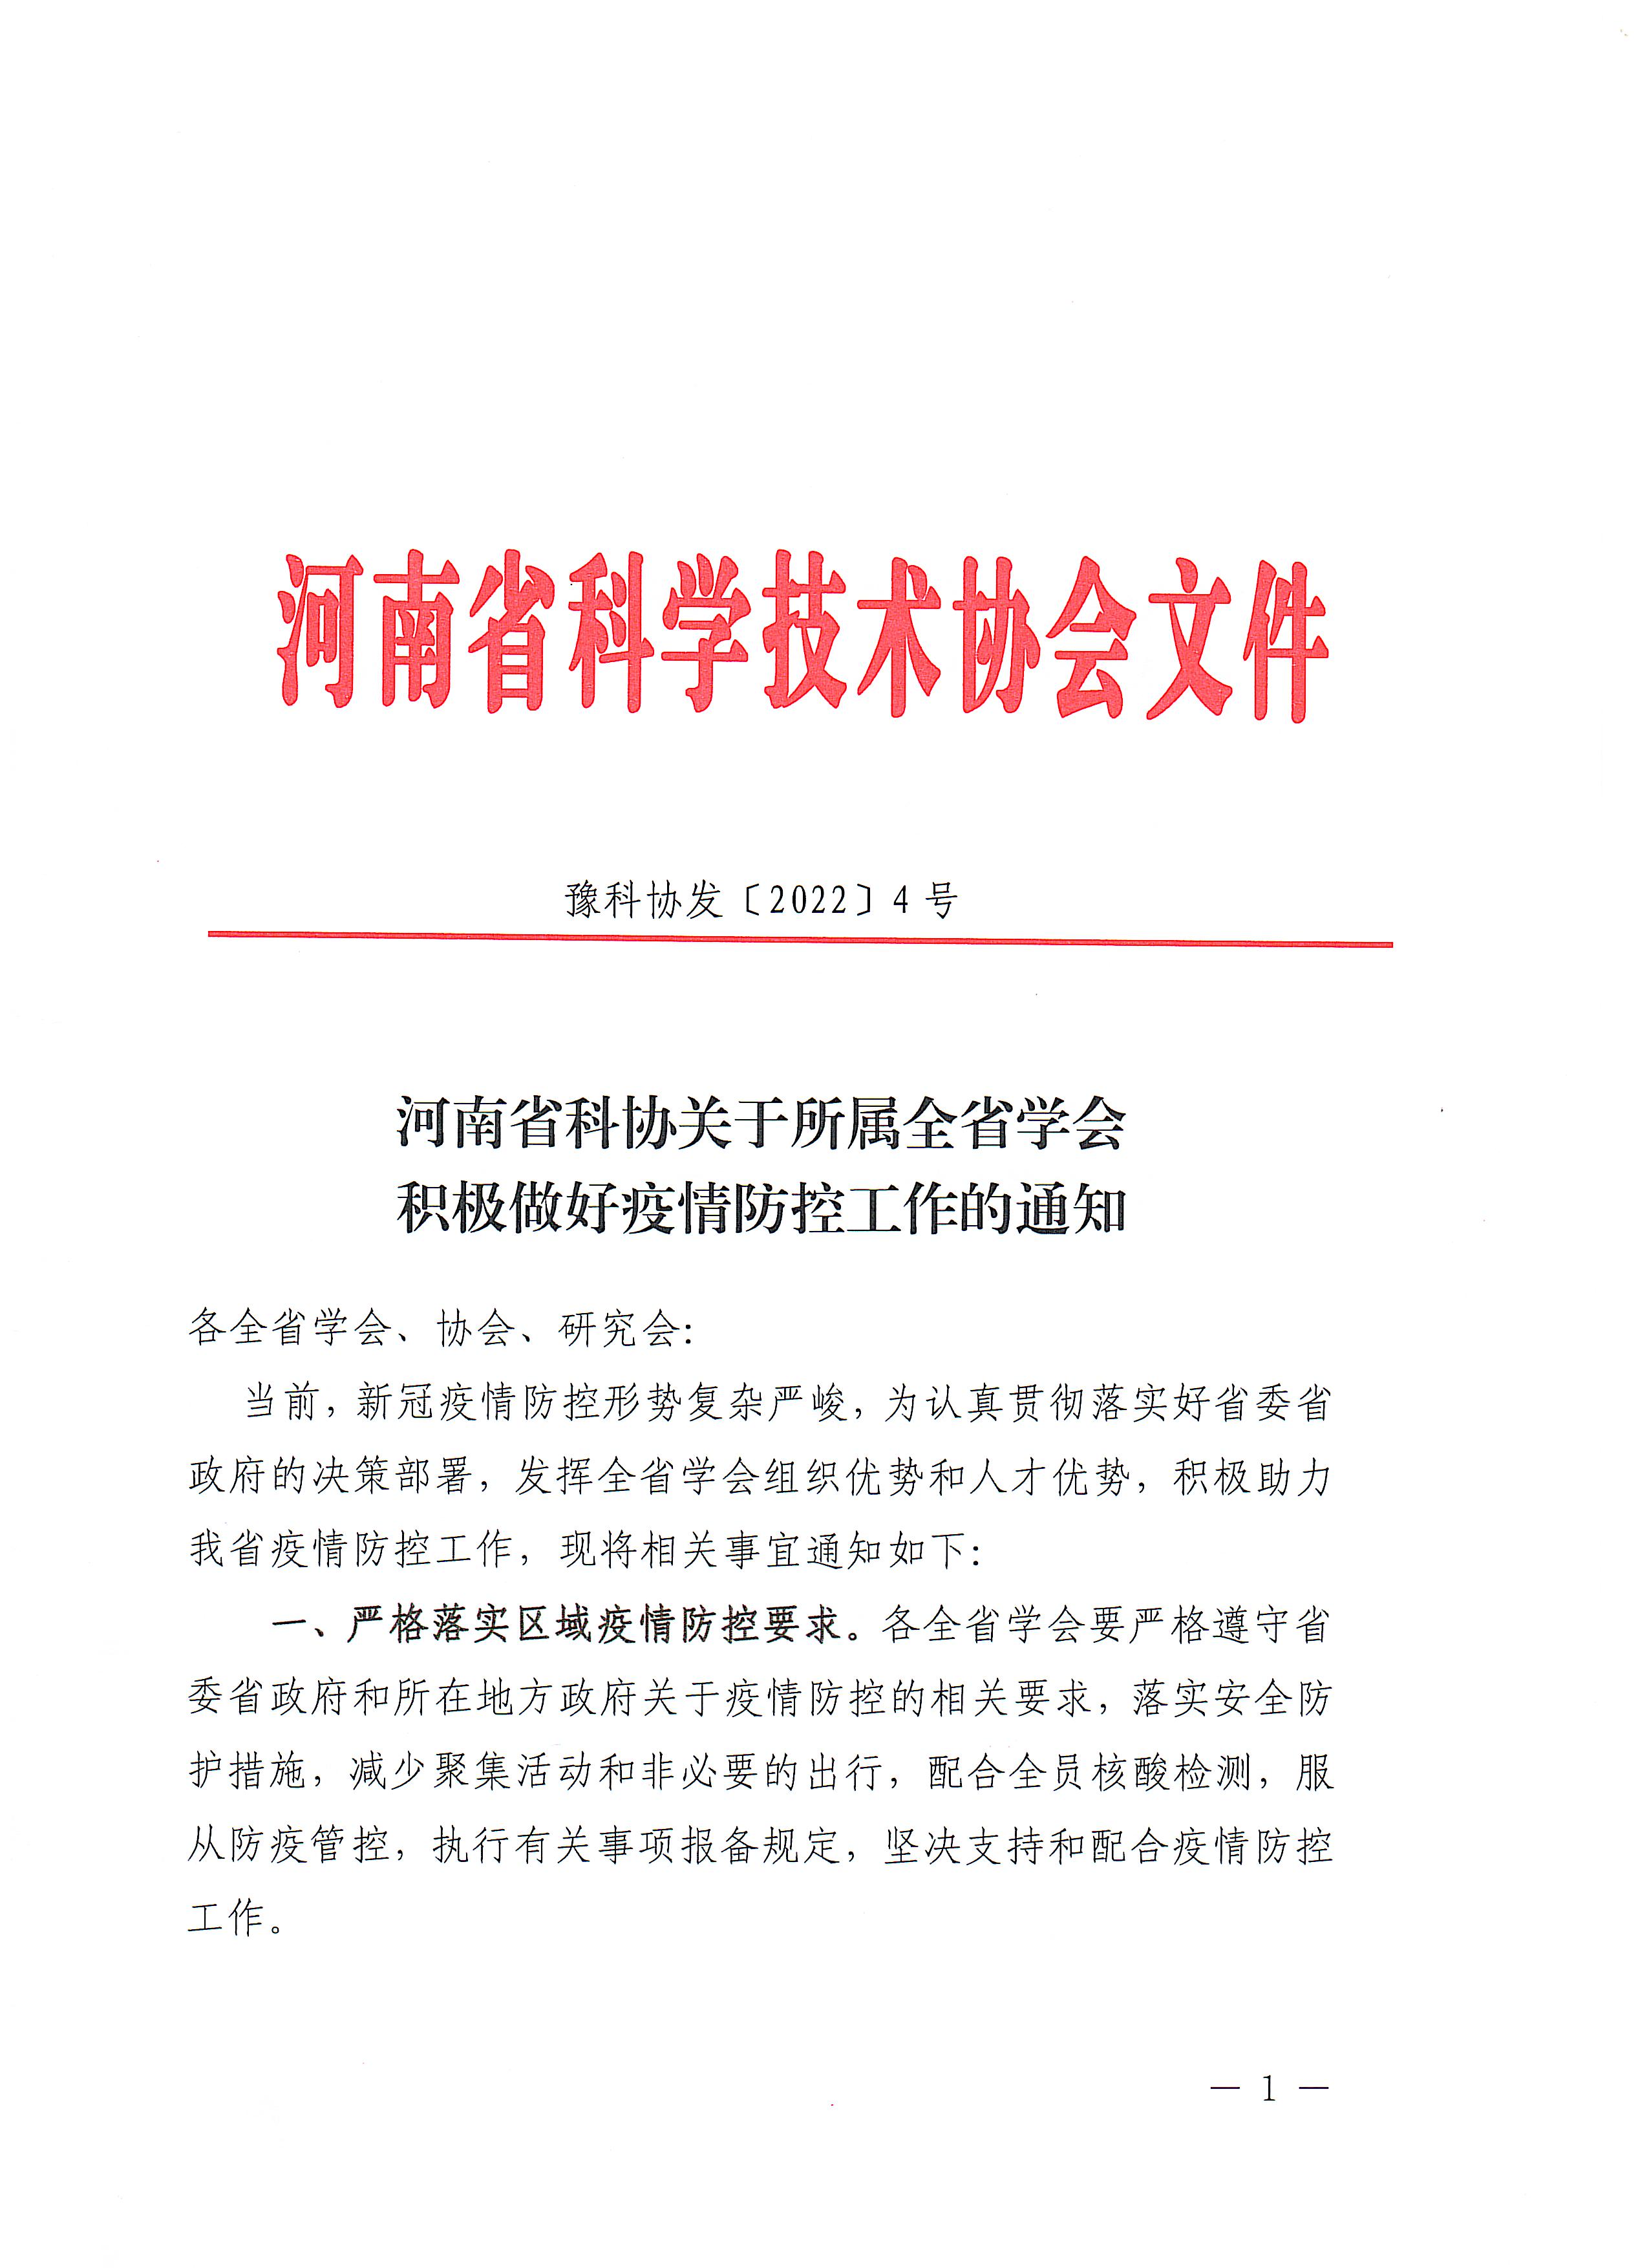 河南省科协关于所属全省学会做好疫情防控工作的通知_页面_1.jpg